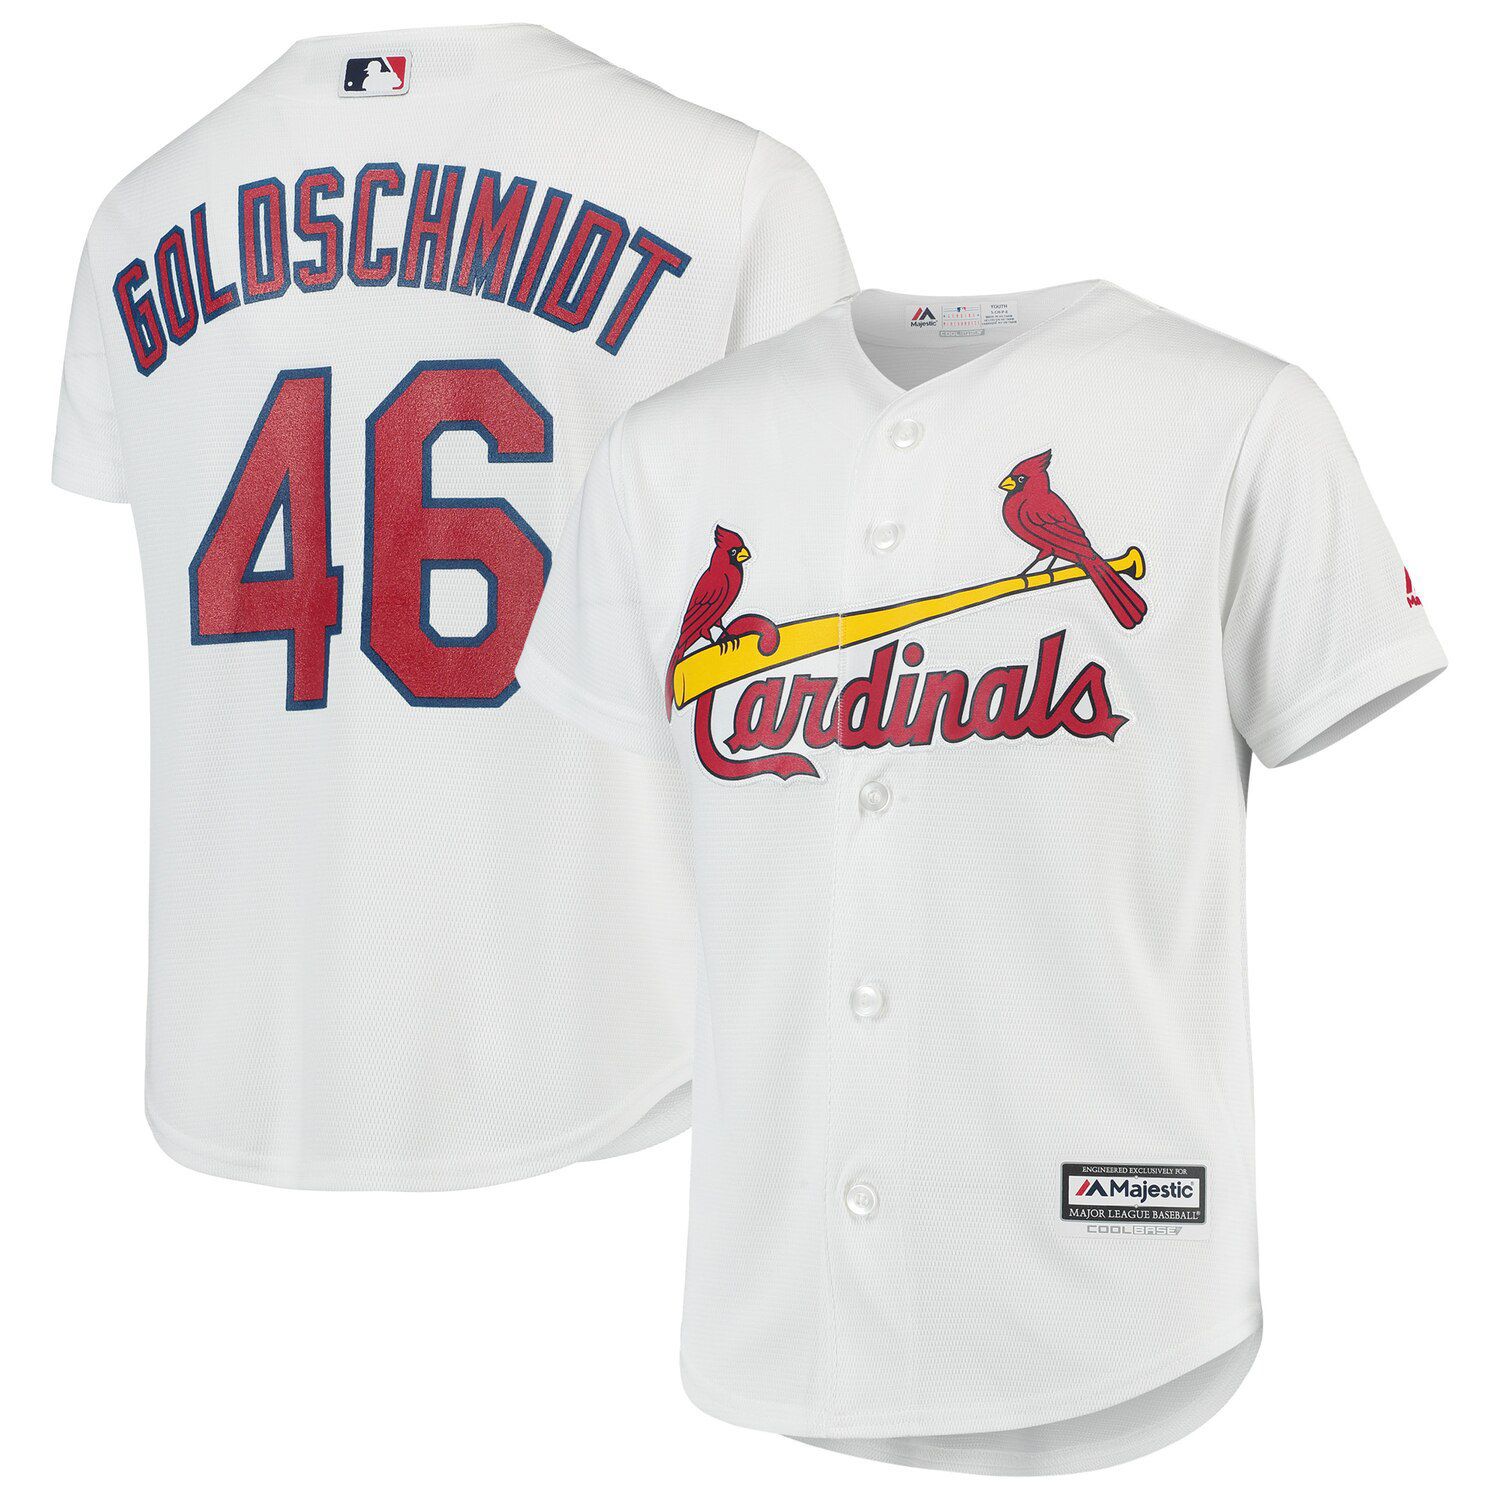 Paul Goldschmidt St. Louis Cardinals 